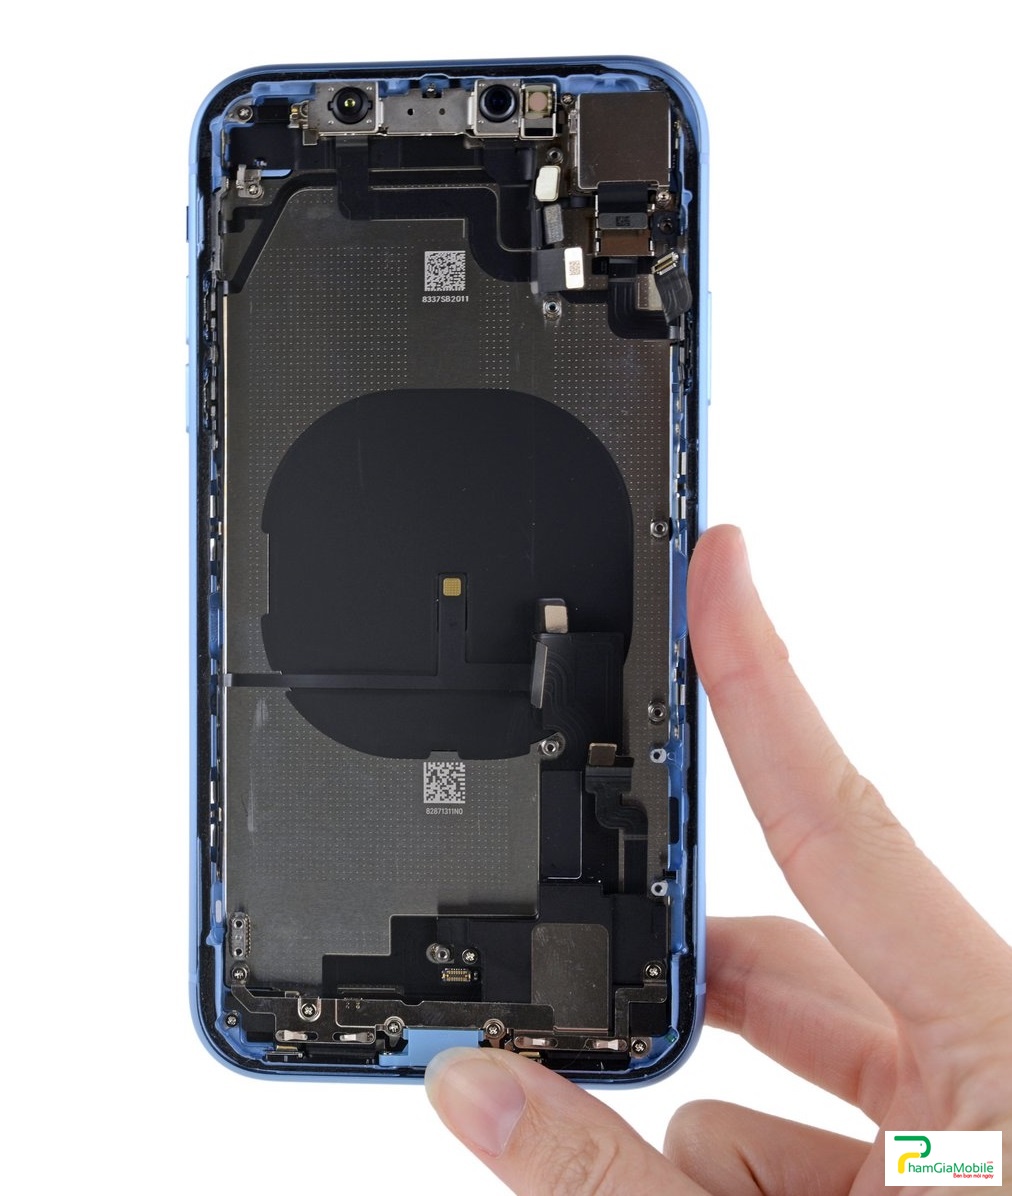 Địa chỉ chuyên sửa chữa, thay thế, sửa lỗi, khắc phục sạc iPhone XR 2019 không báo gì, Sửa Sạc USB Tai Nghe Mic iPhone XR 2019 Chân Sạc, Chui Sạc  thay thế Chân Sạc, thay Chui Sạc Chính hãng uy tín giá tốt tại phamgiamobile 